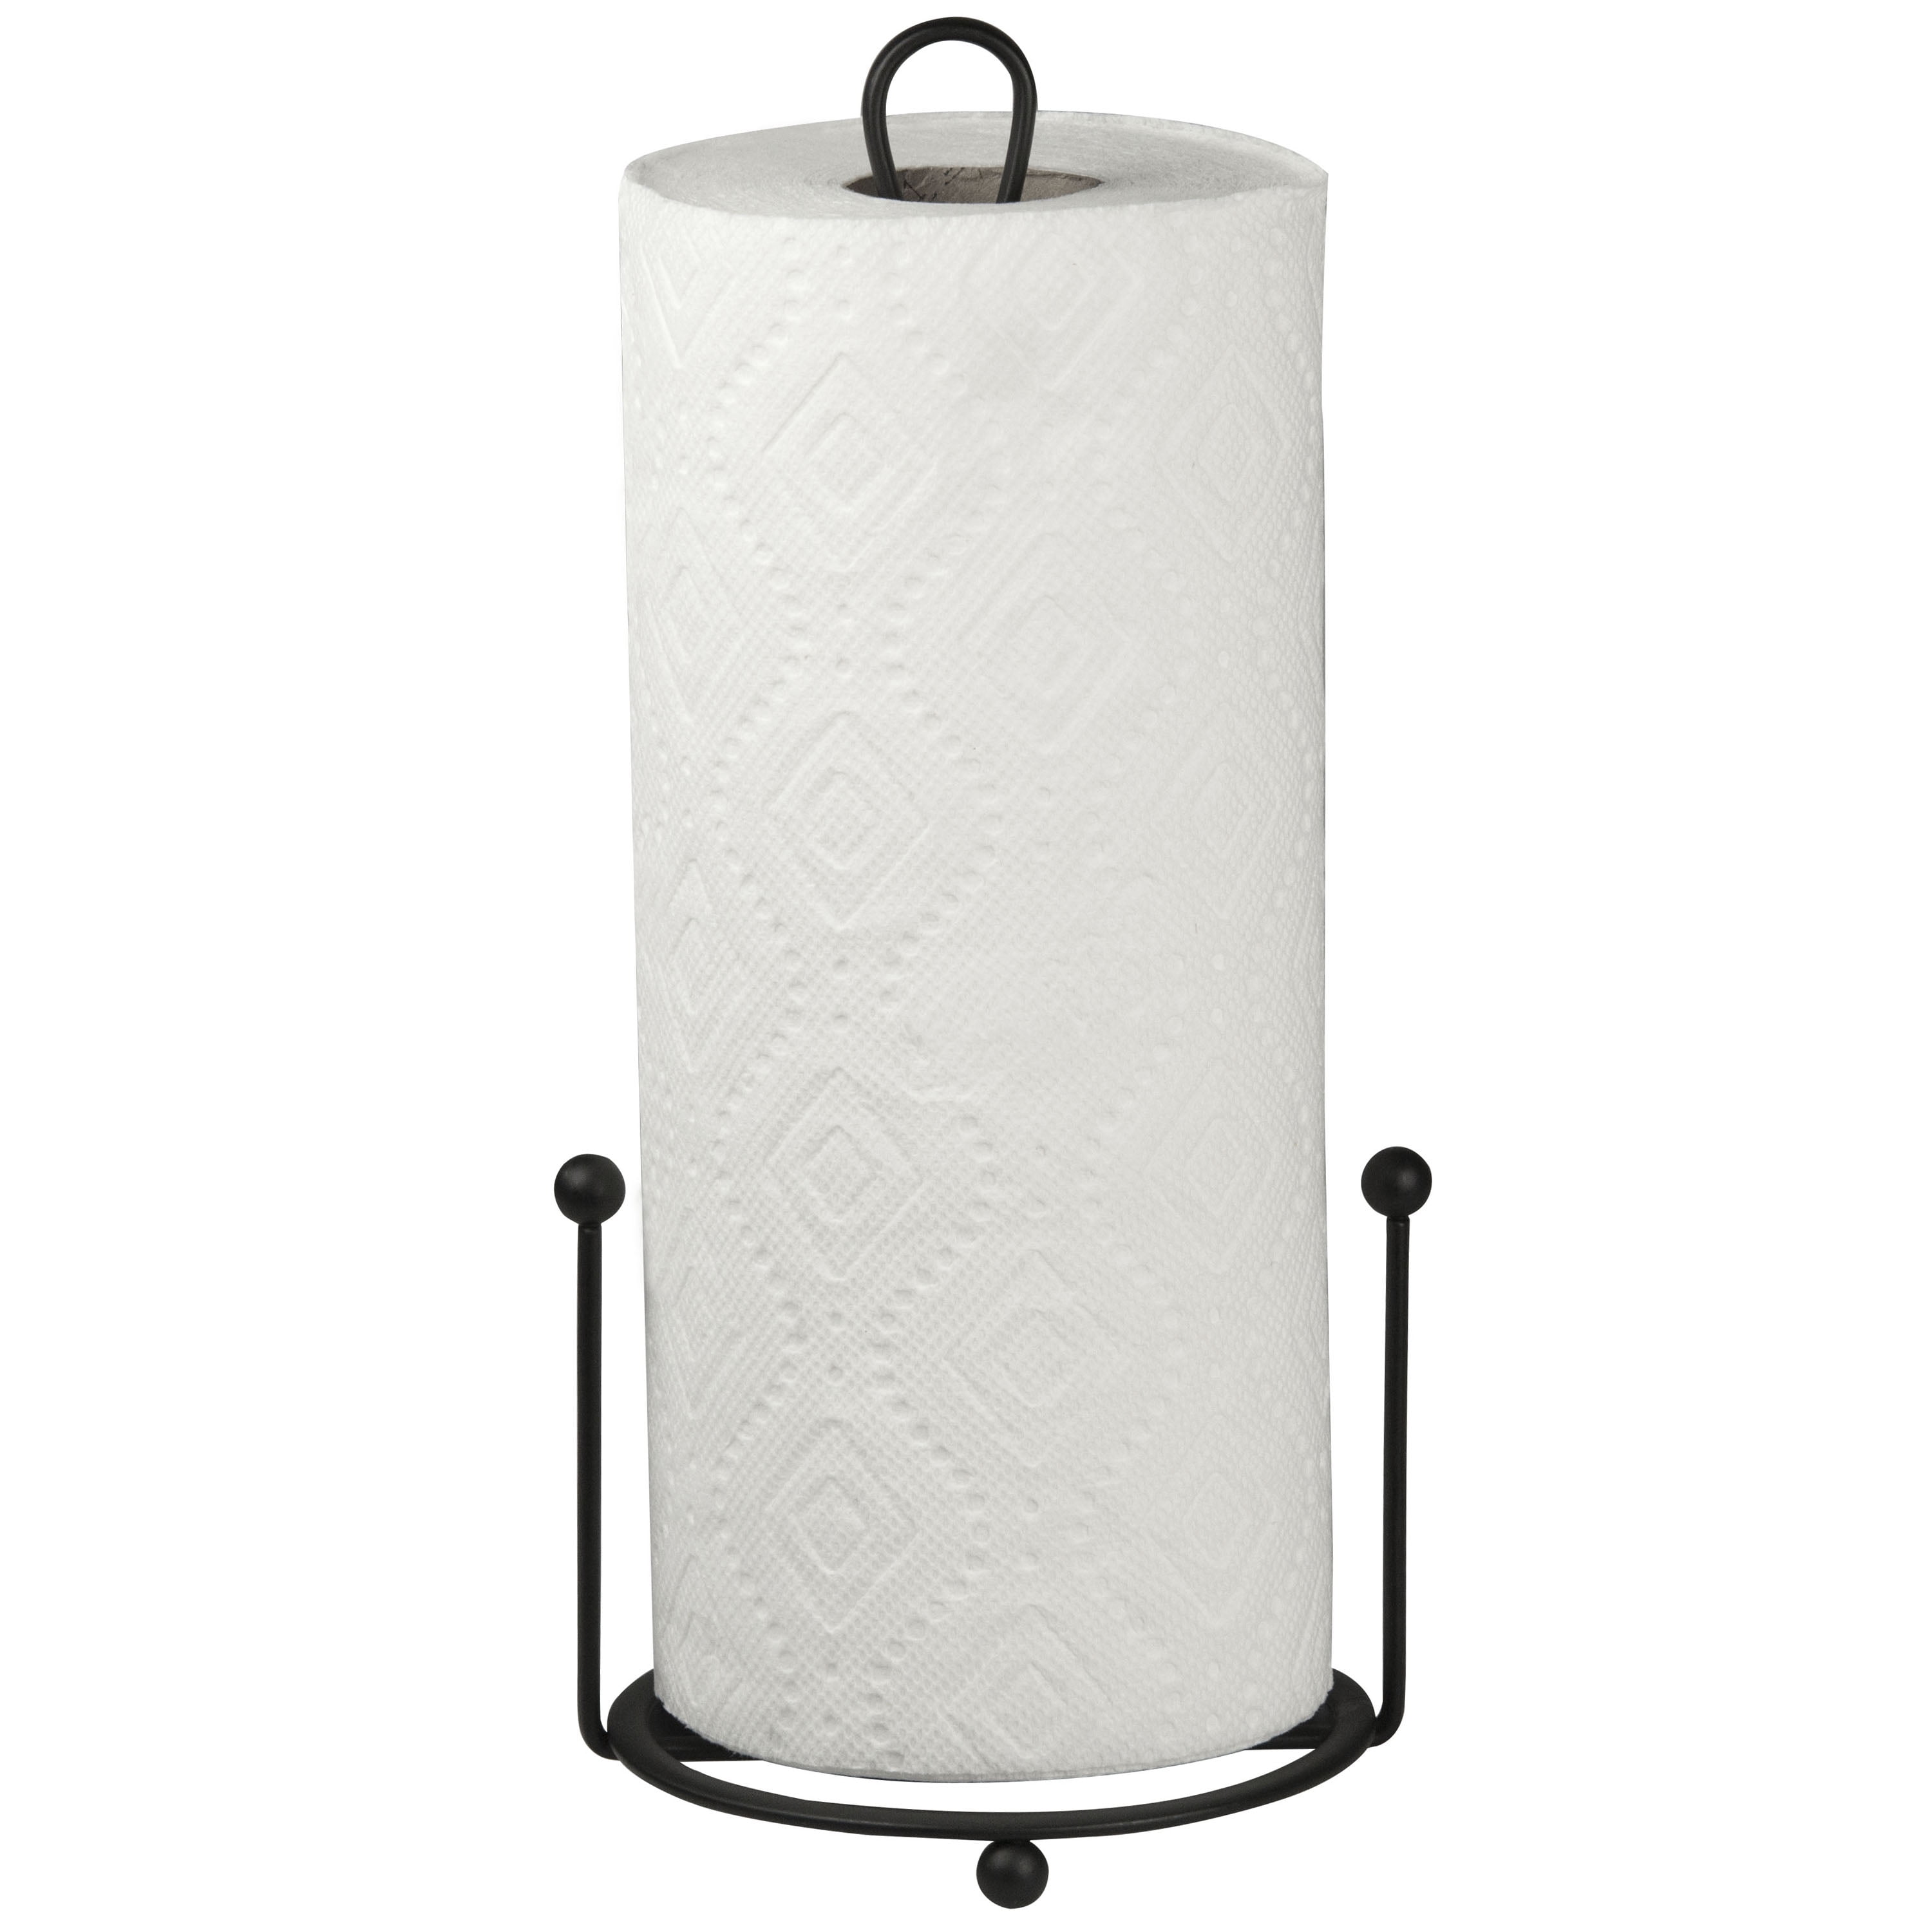 Umbra Black Ribbon Paper Towel Holder 1016795-1171 - The Home Depot